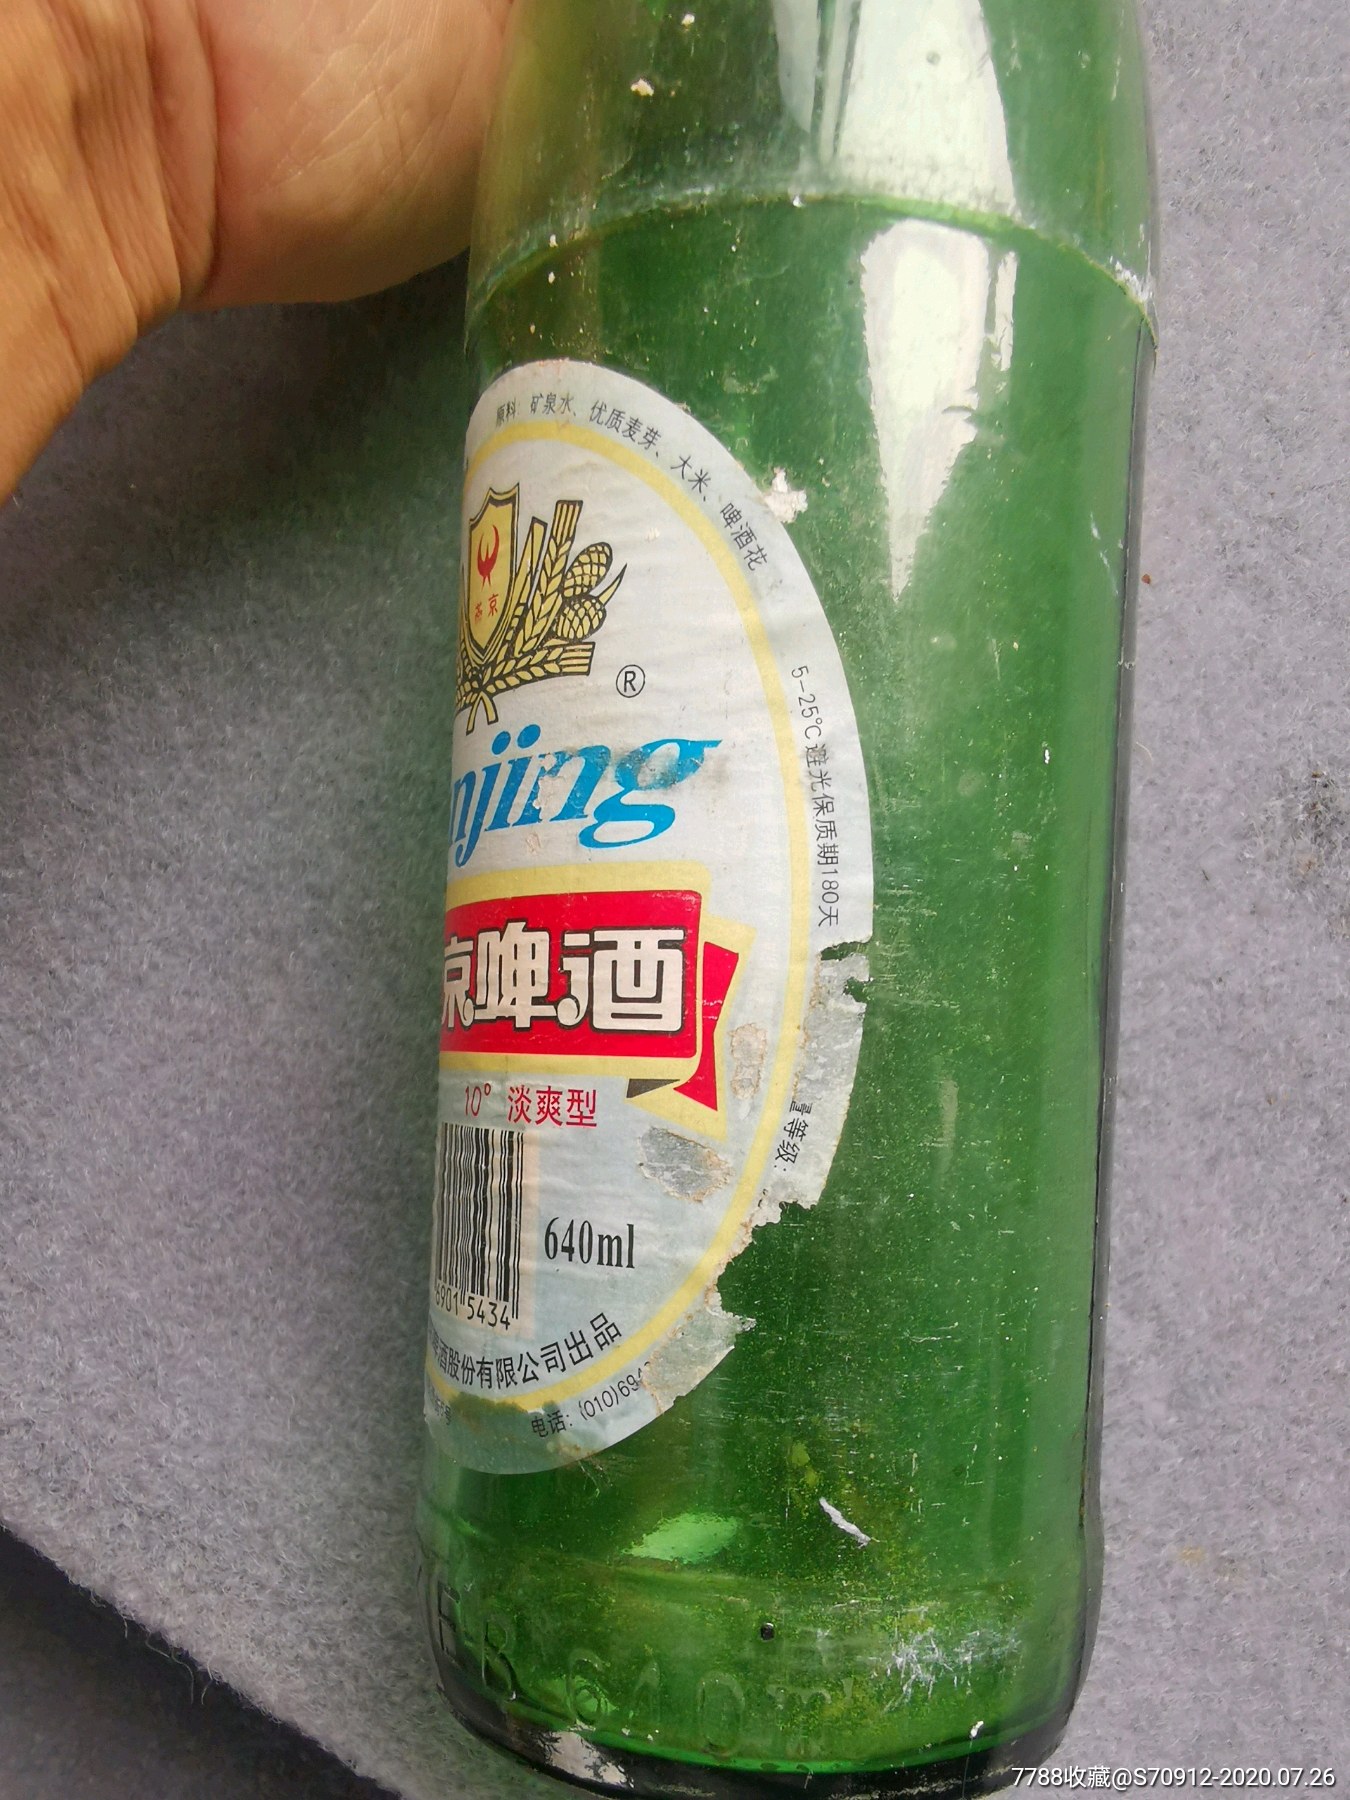 燕京啤酒瓶,九十年代,有奖销售上有